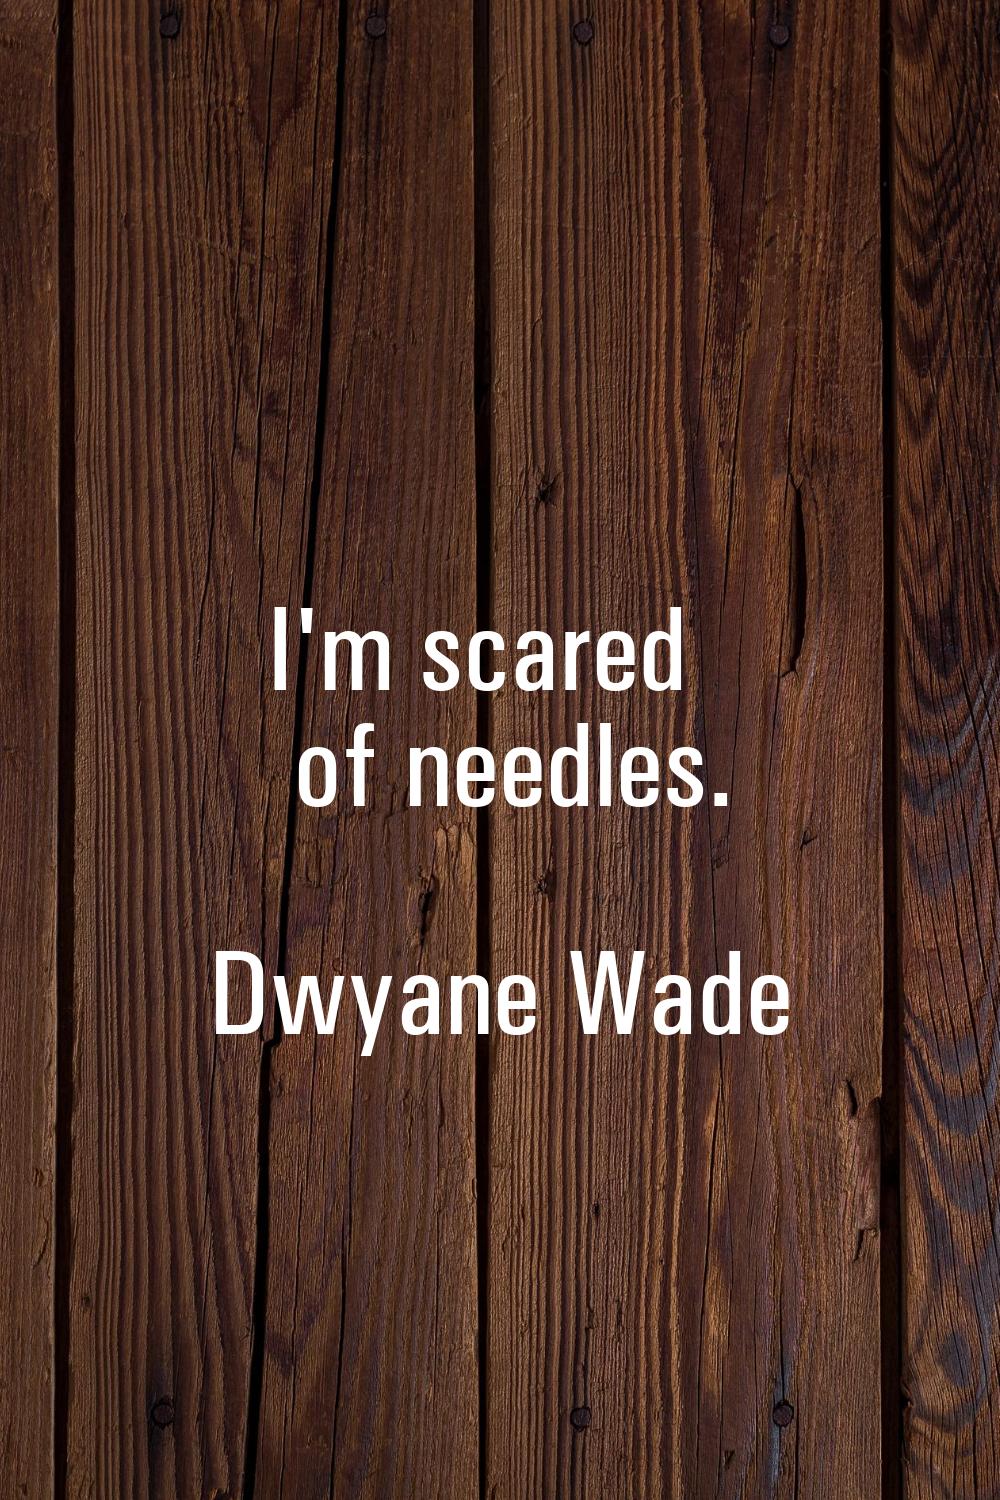 I'm scared of needles.